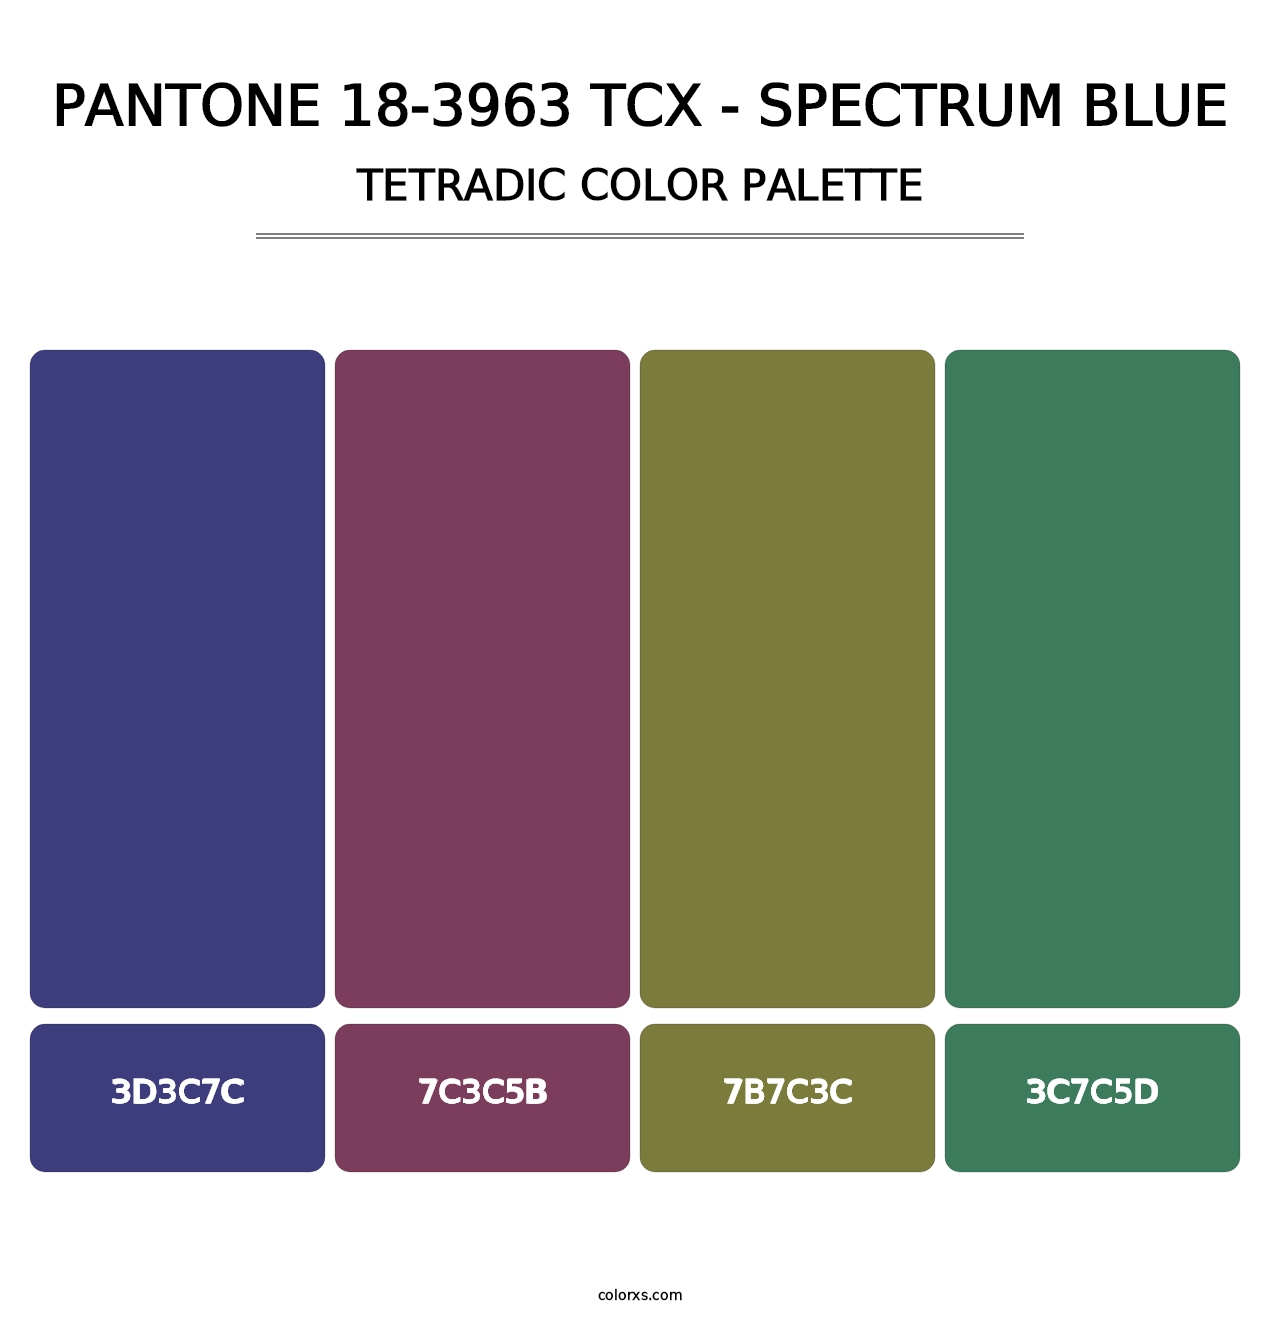 PANTONE 18-3963 TCX - Spectrum Blue - Tetradic Color Palette